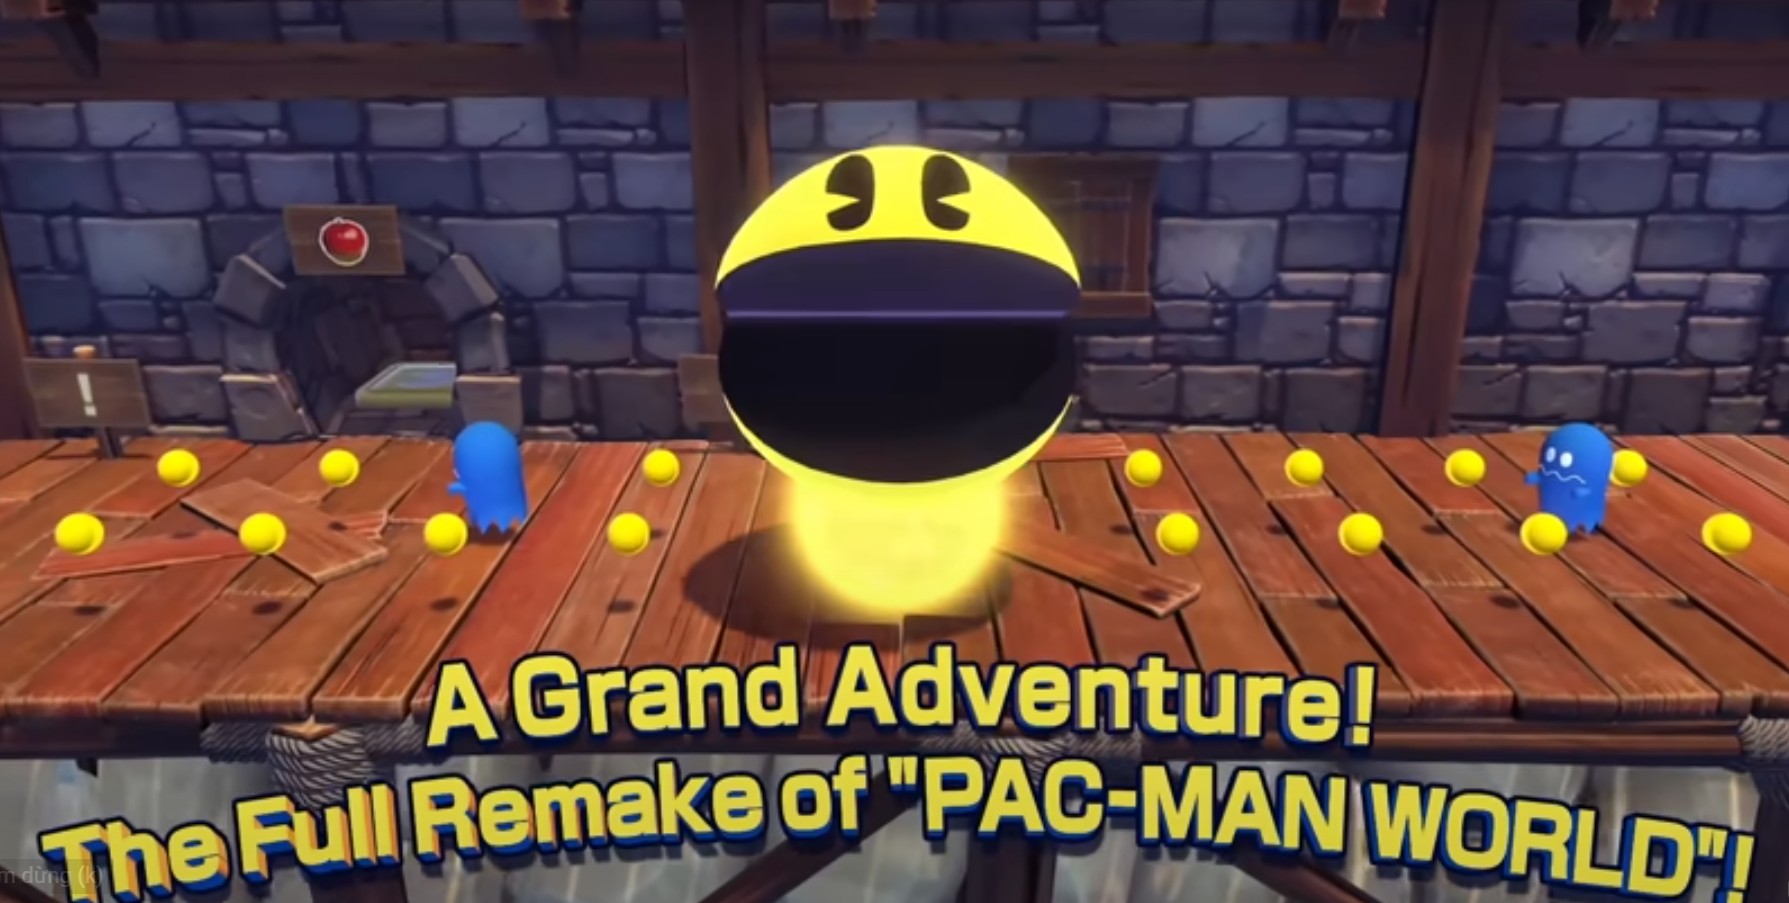 Huyền thoại tuổi thơ Pac-Man được làm mới sau gần 20 năm “ngủ đông” - ảnh 2